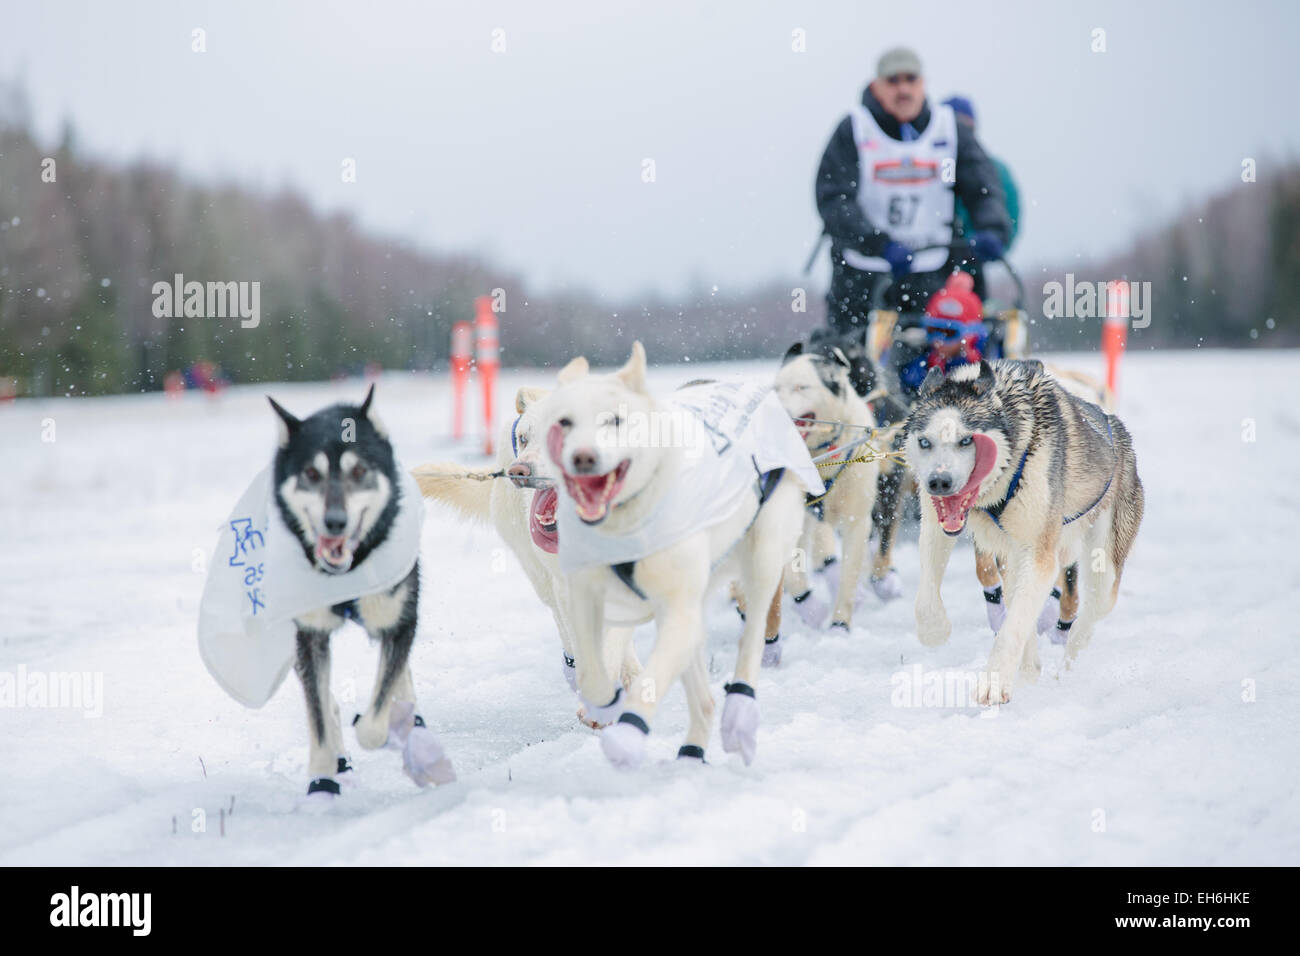 Iditarod rookie Chuck Schaeffer arrived at the finish of the ceremonial start to the 2015 Iditarod Sled Dog Race at Anchorage (USA) on March 7, 2015. Photo: Joshua Corbett/dpa (zu dpa: Alaska, Land des Hechelns: «Das härteste Schlittenrennen der Welt» vom 08.03.2015) Stock Photo